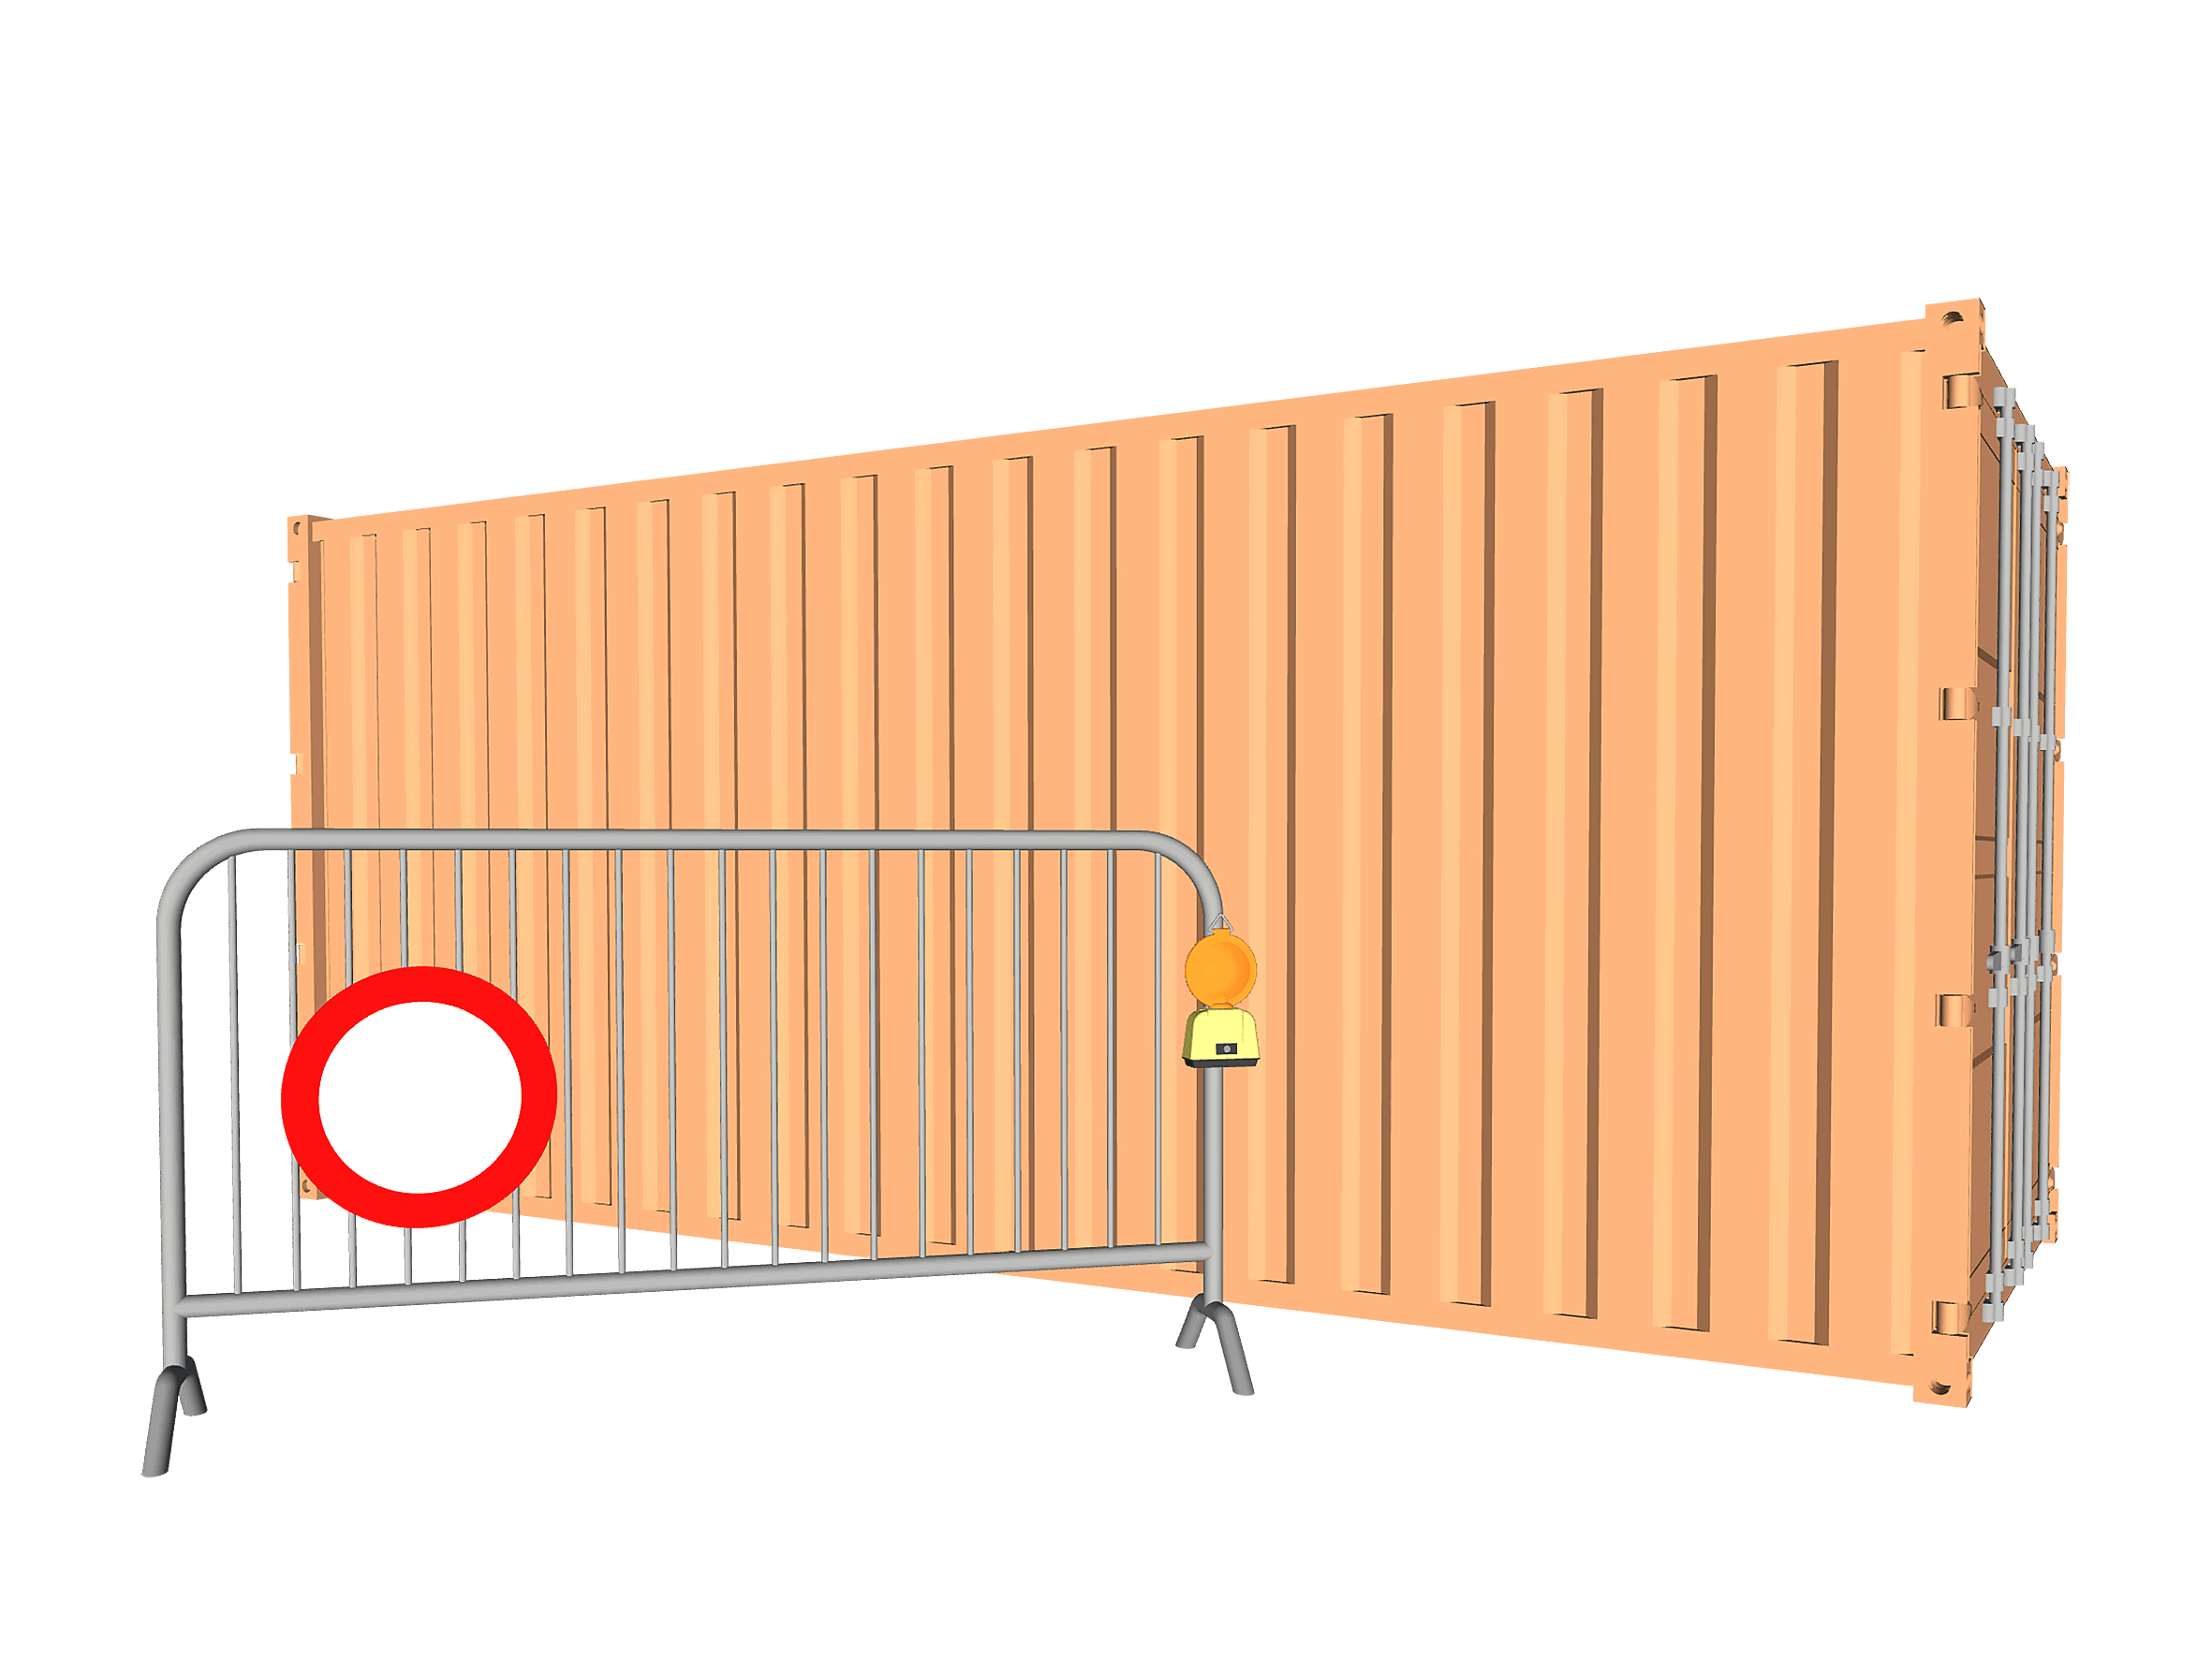 5-Eef-Veldkamp-Barricade-Collage-nr1-2020-photo-of-3D-modelpng